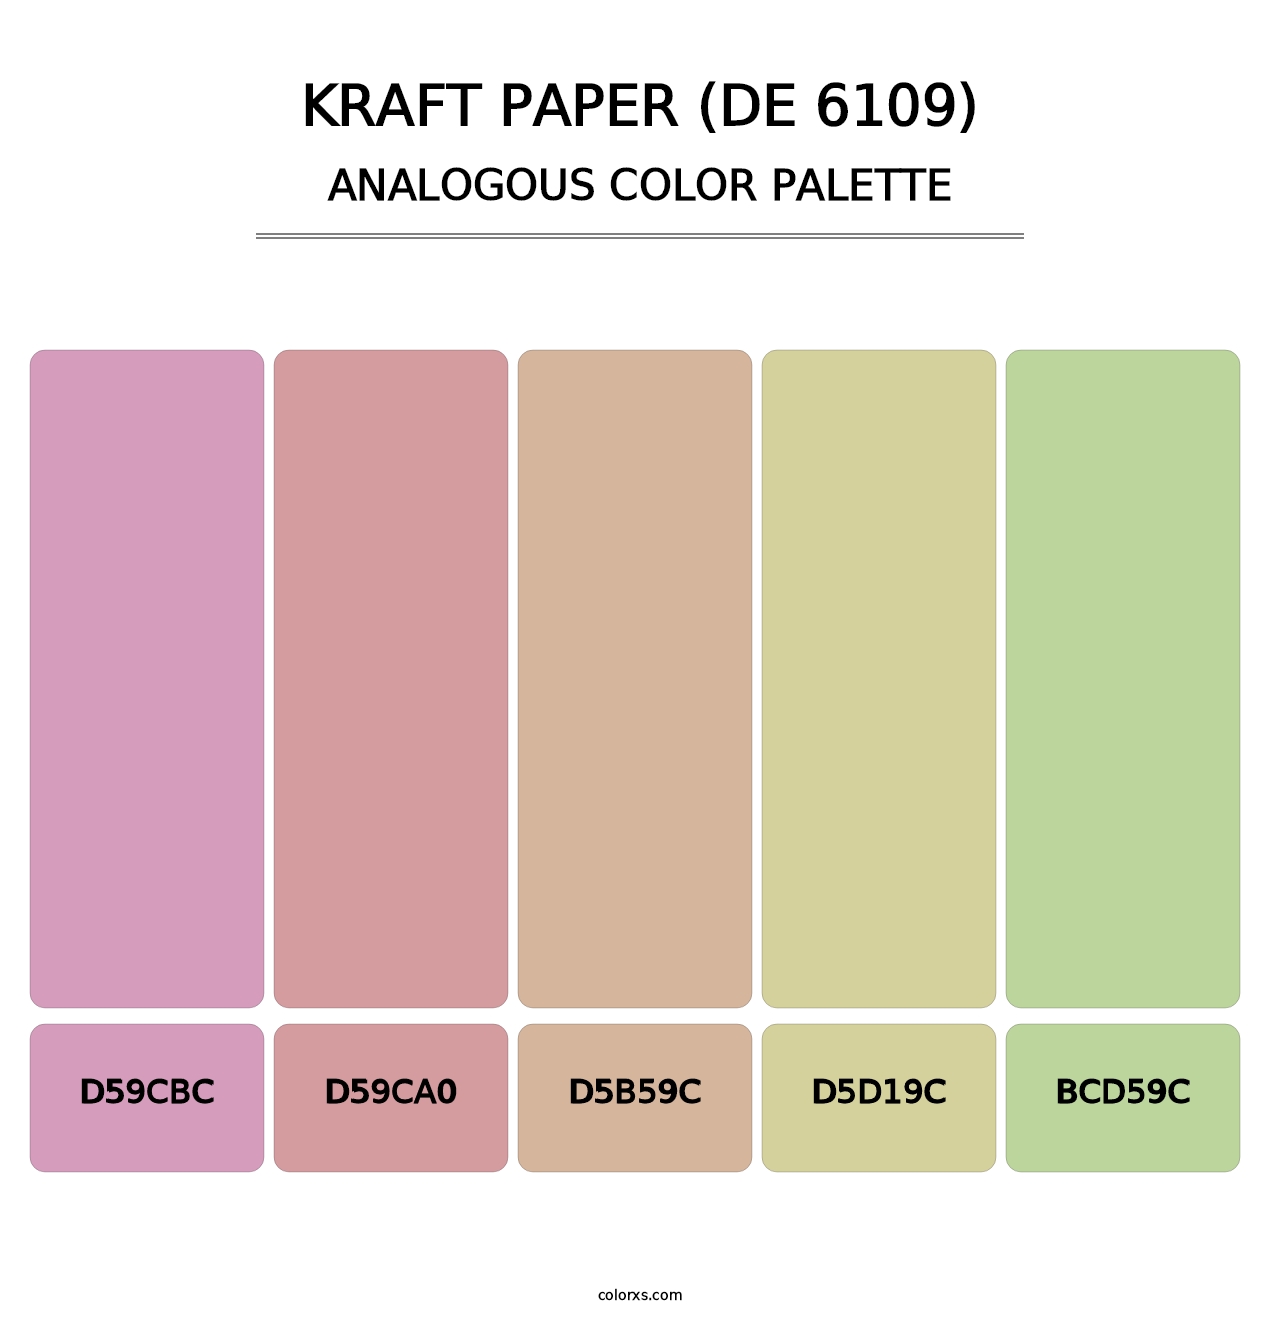 Kraft Paper (DE 6109) - Analogous Color Palette